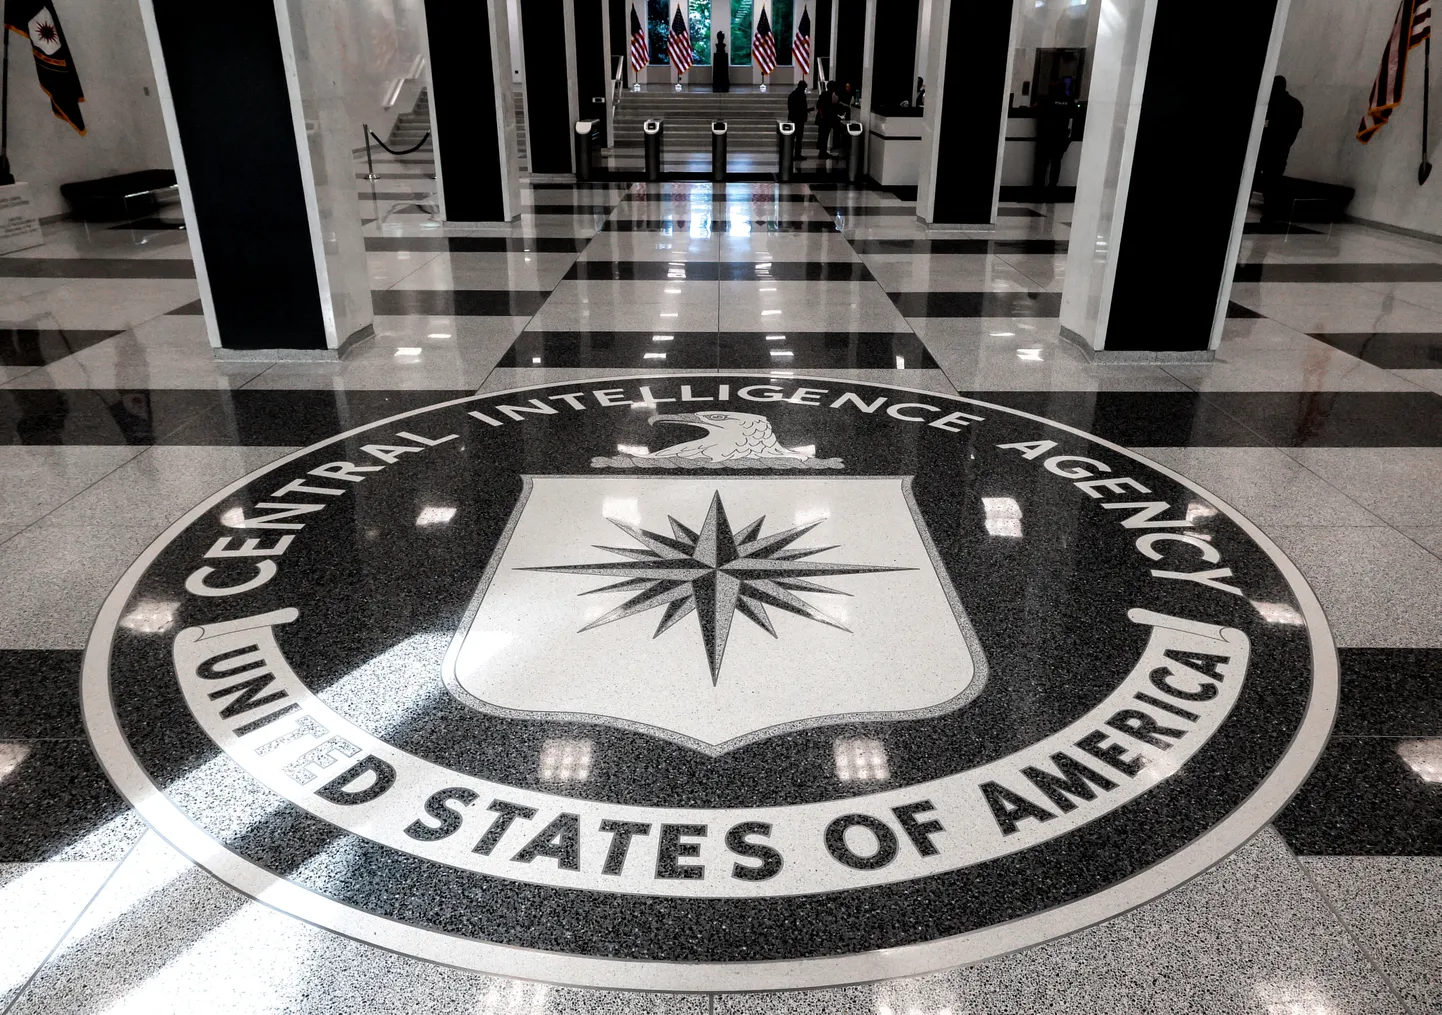 USA Luure Keskagentuuri (CIA) logo selle peakontori siseepääsu juures põrandal.